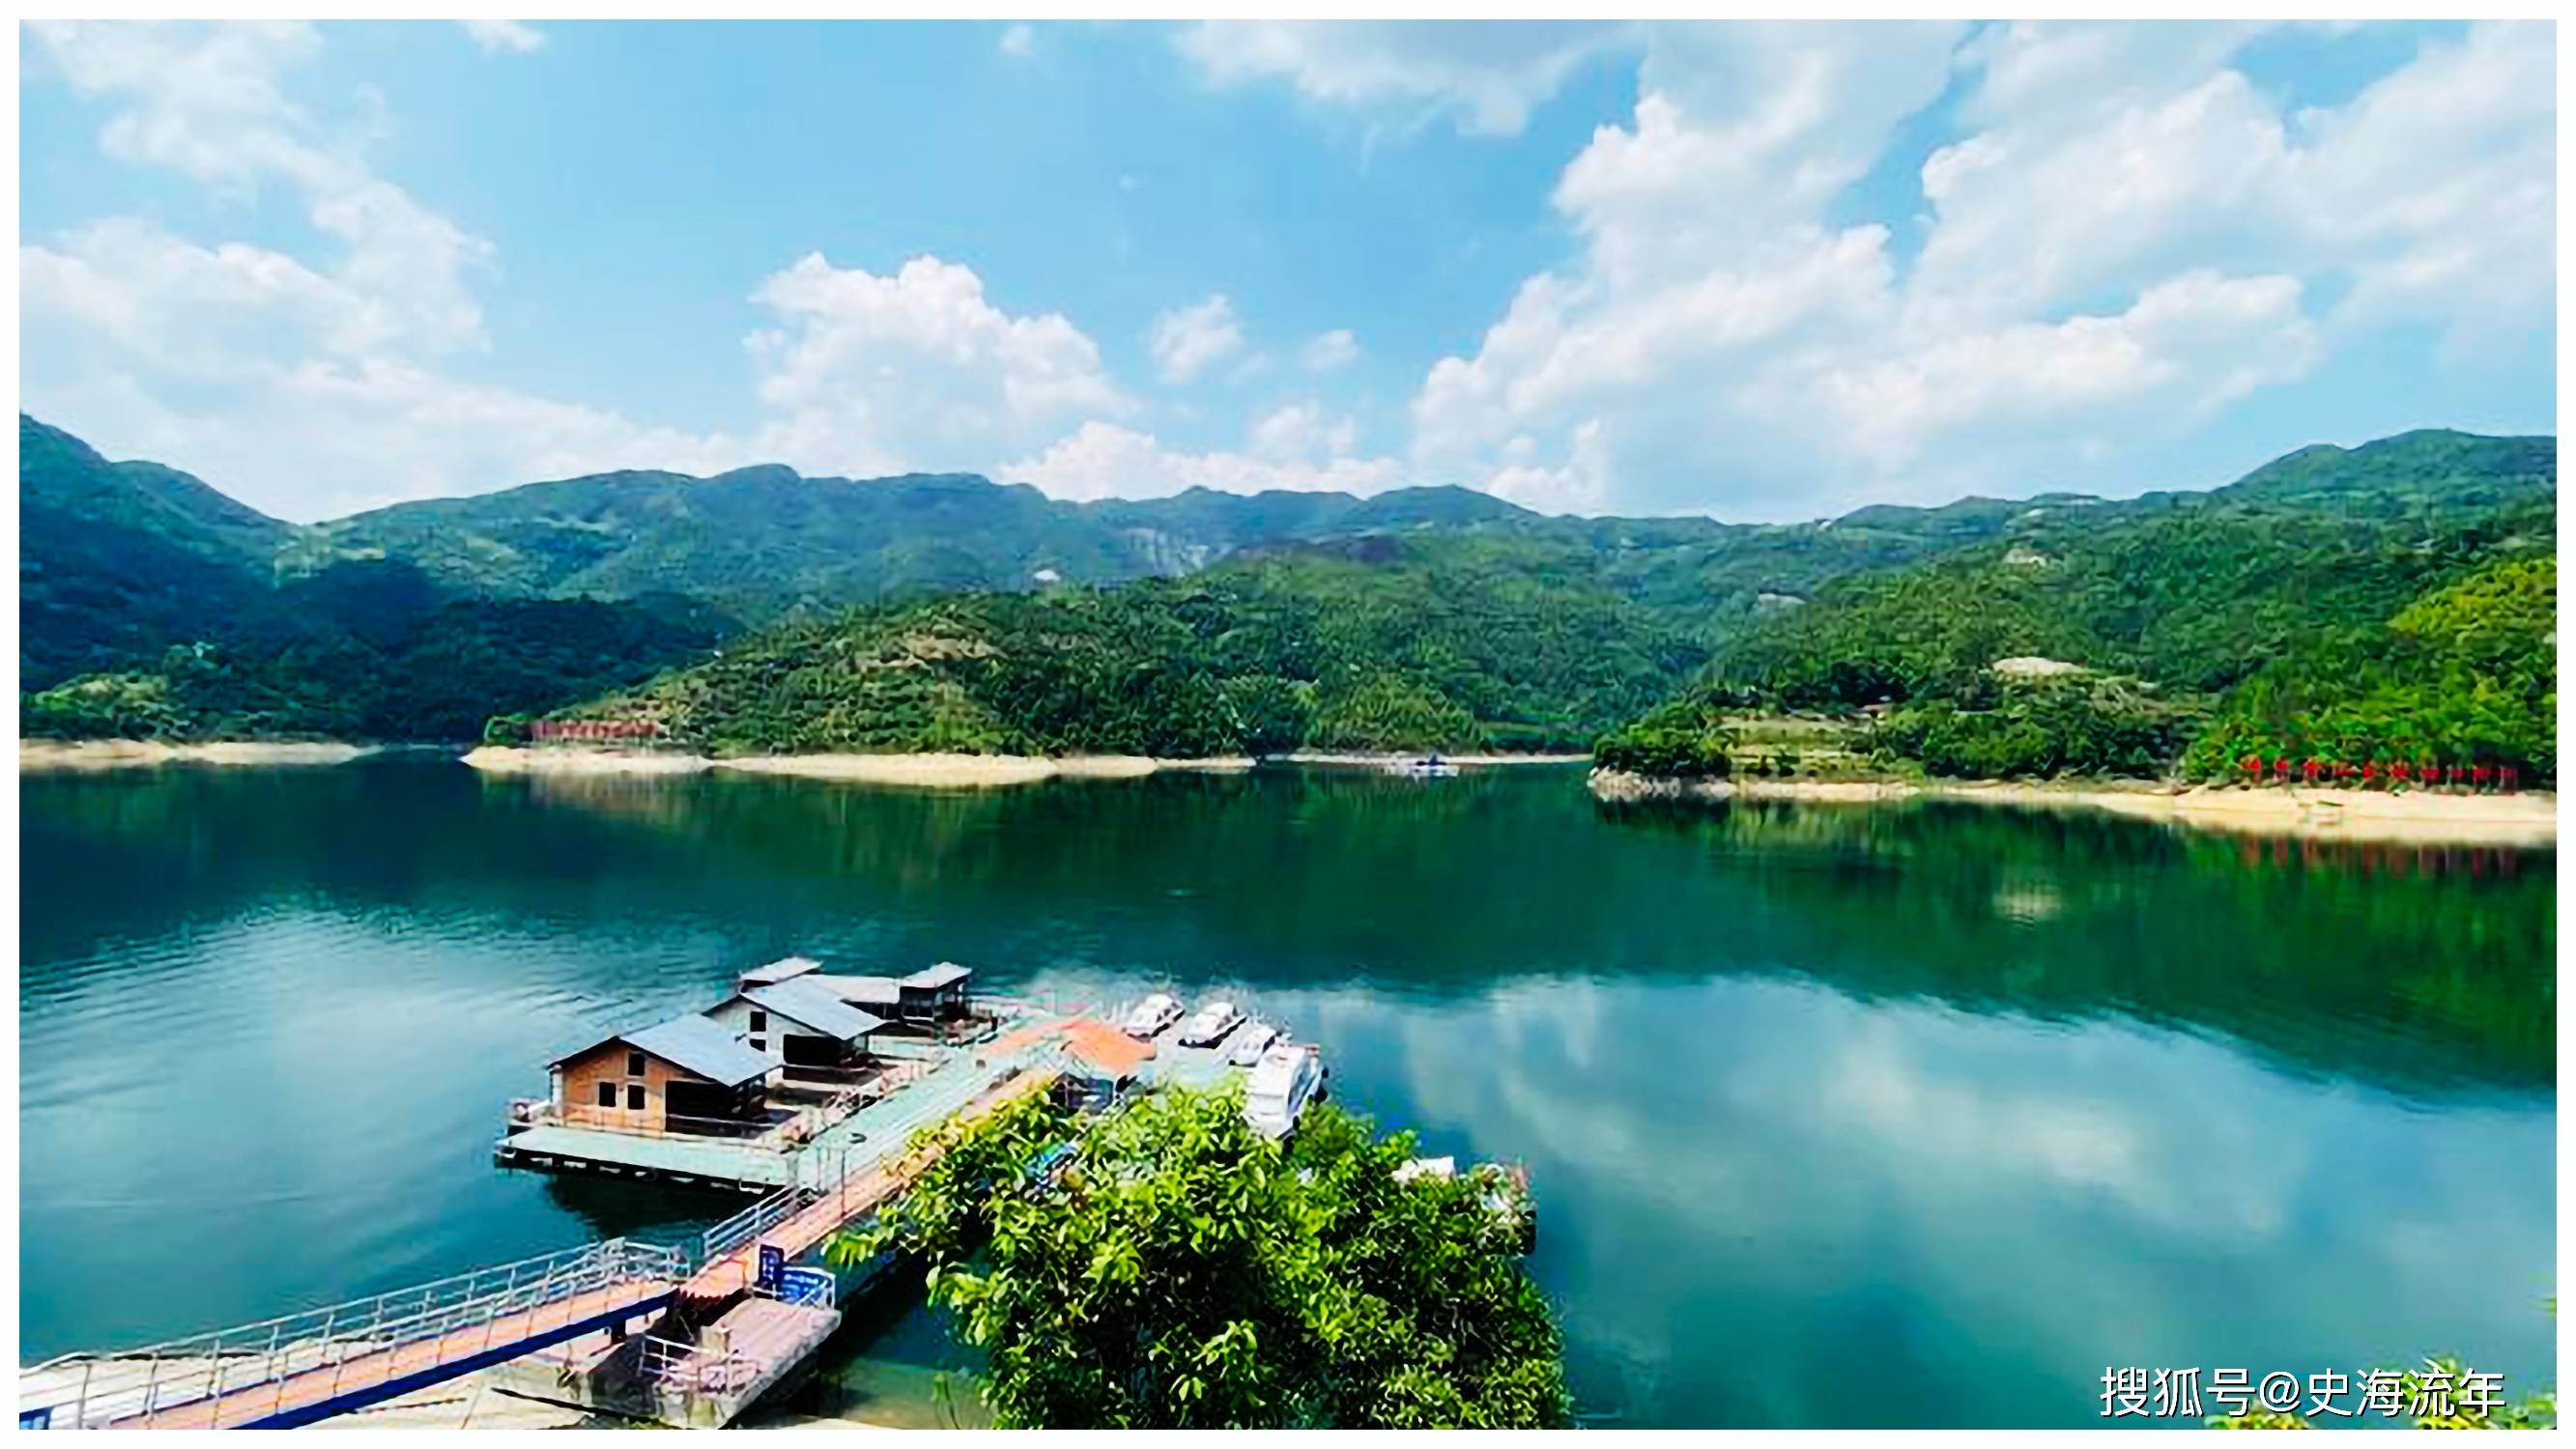 千峰环抱鉴湖开,游客熙熙览镜台,快点来欣赏文成珊溪水库的美图